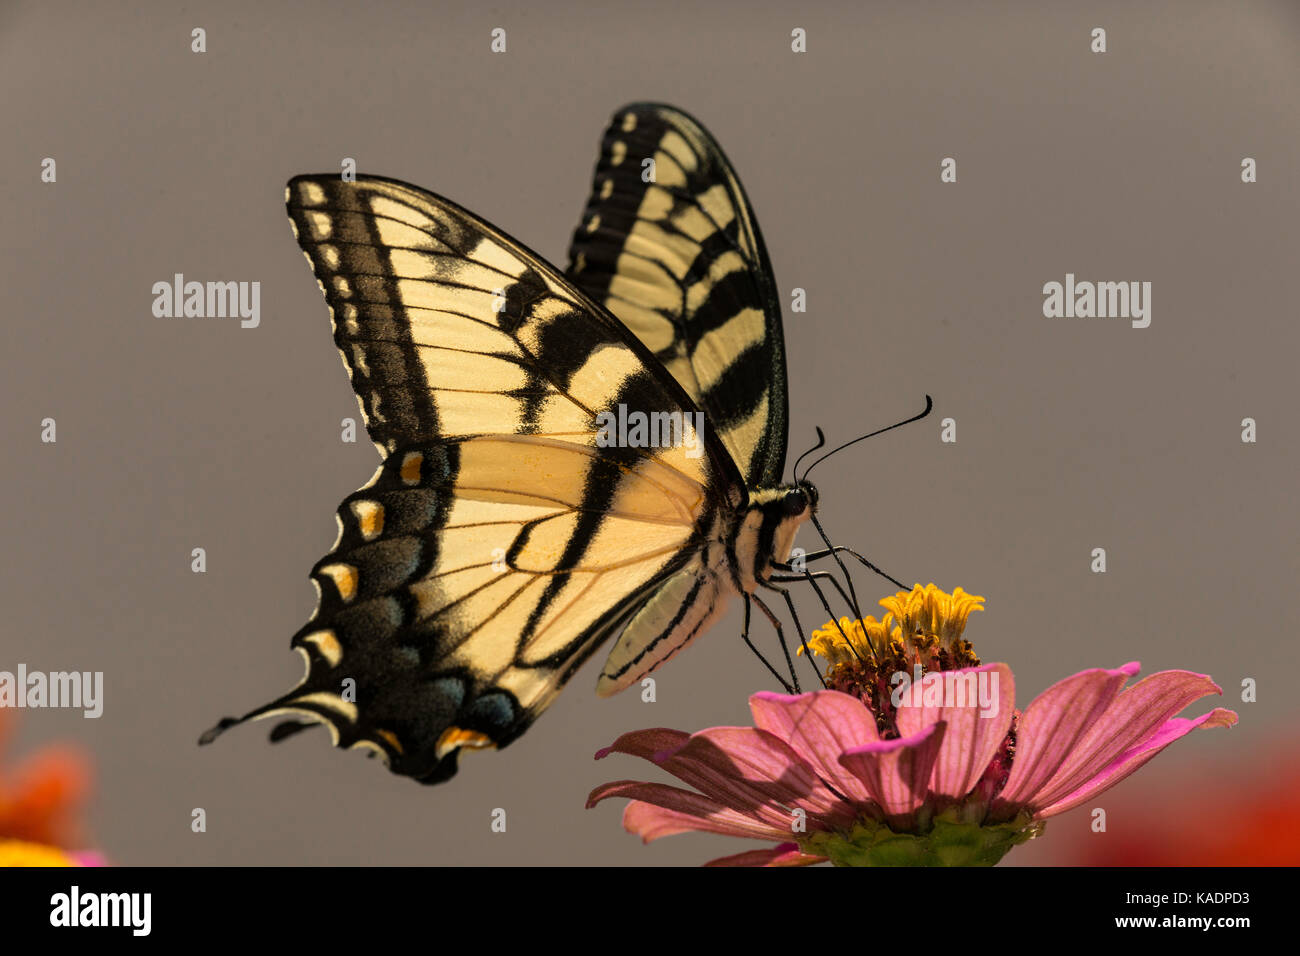 Giant Swallowtail feeding on Zinnia flower. Stock Photo